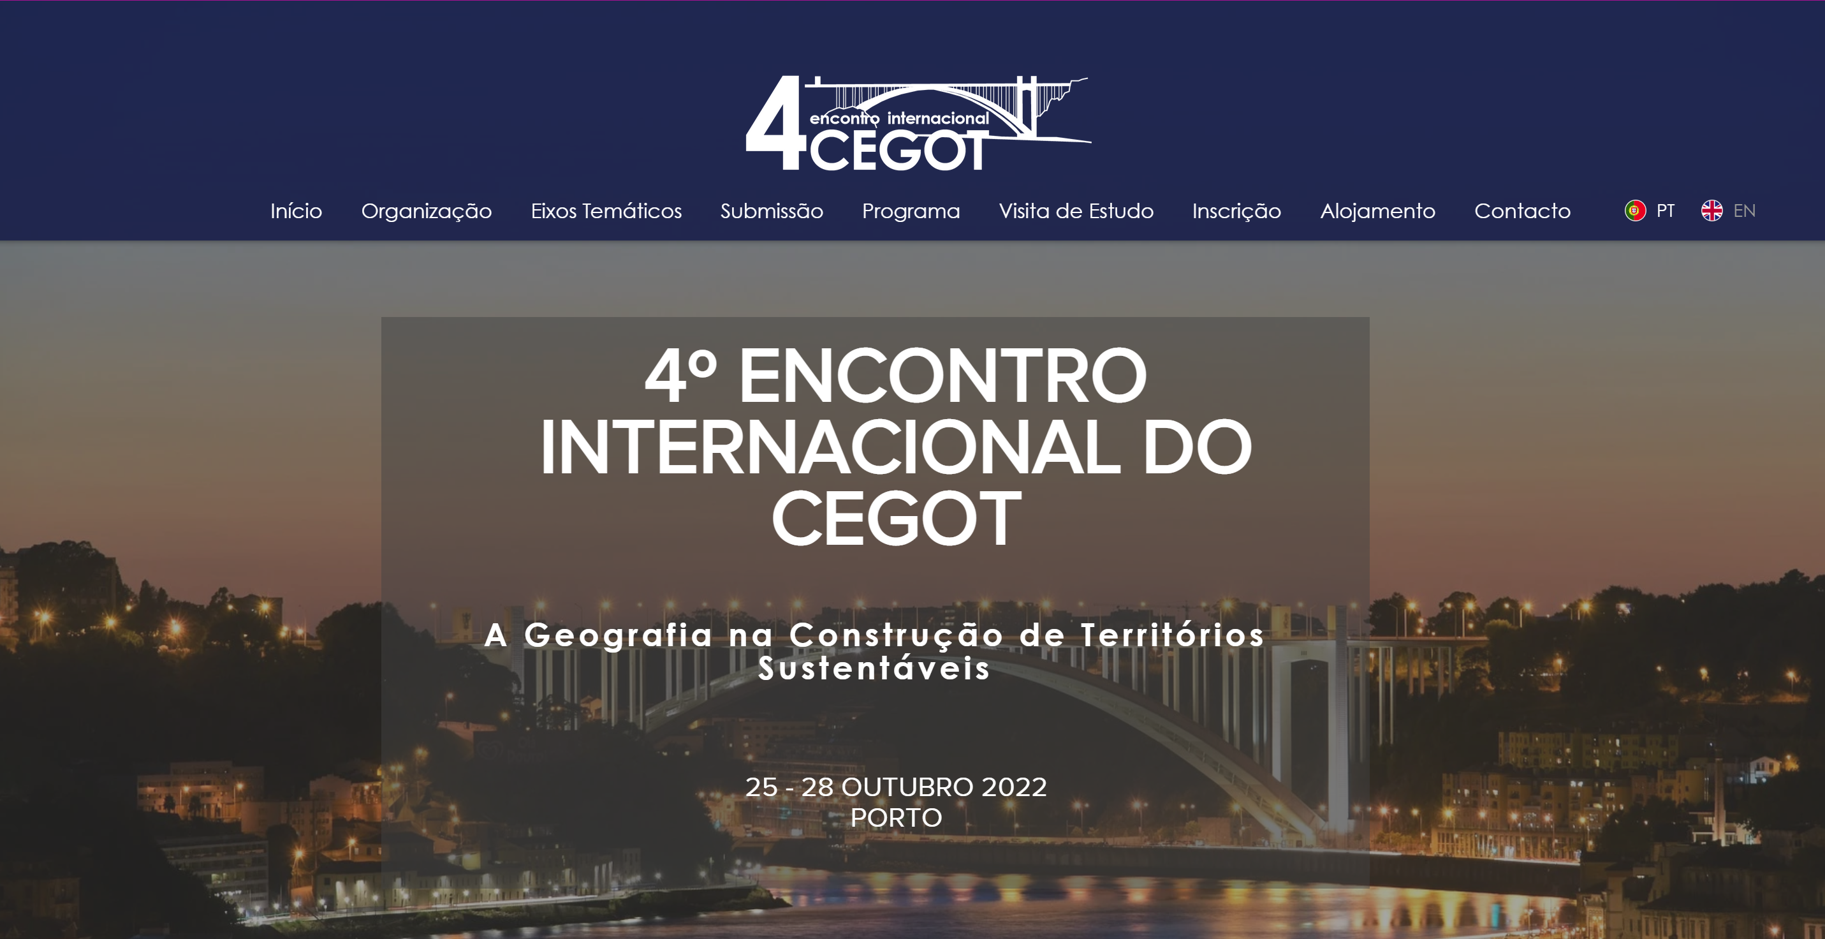 Maria García Hernández ponente invitada en el 4º Encontro Internacional do CEGOT (Oporto, Portugal)